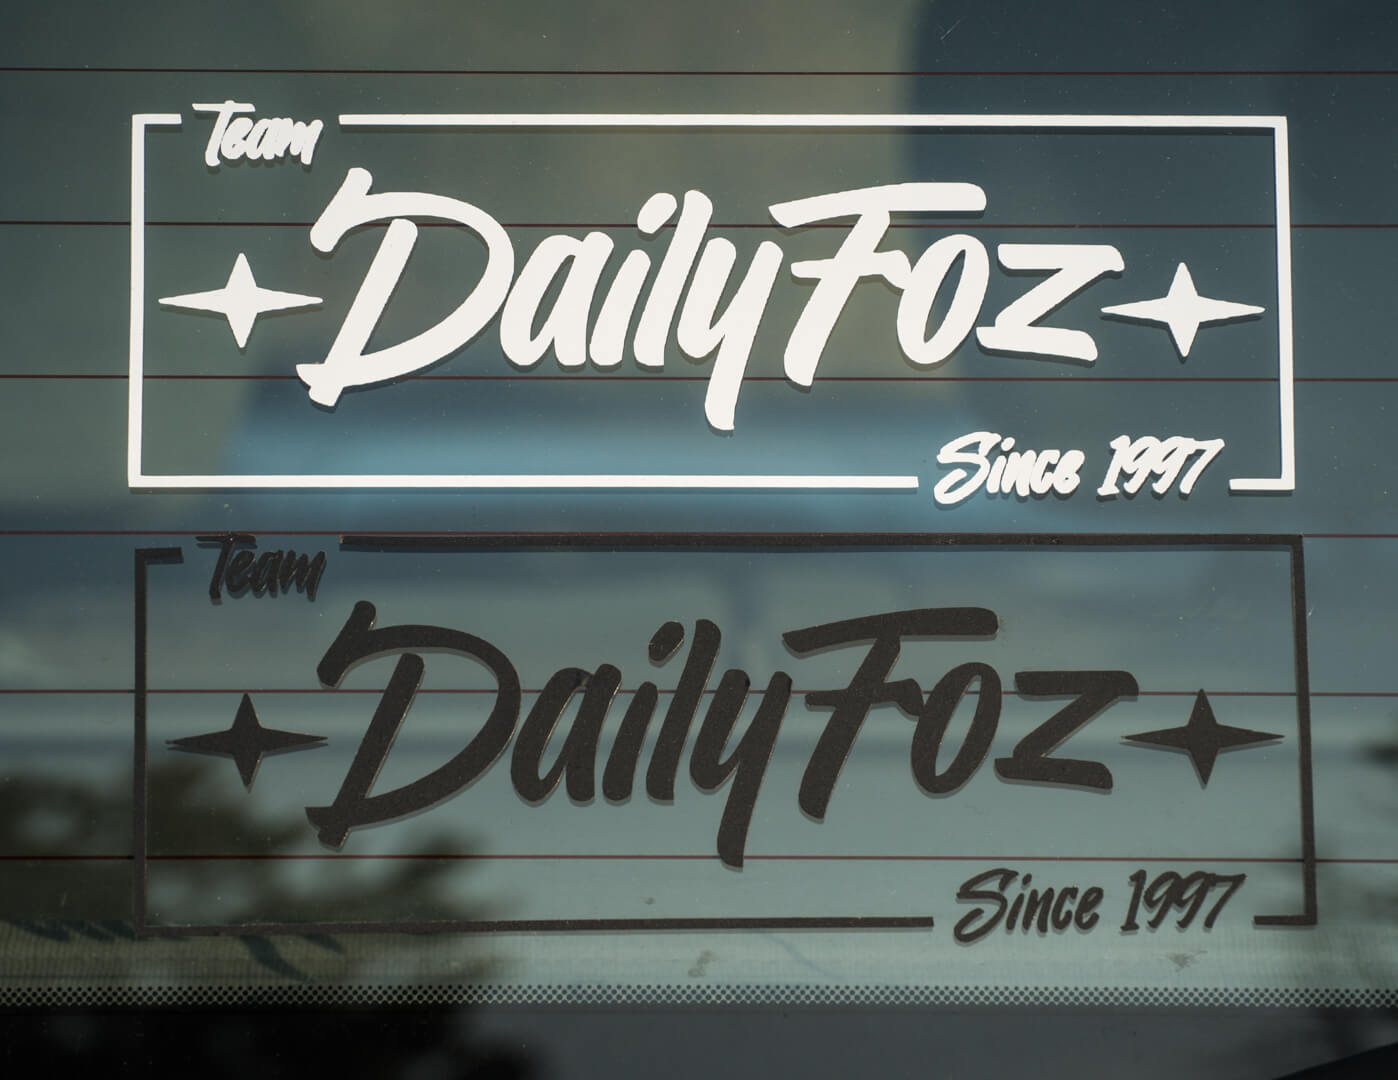 DailyFoz Sticker